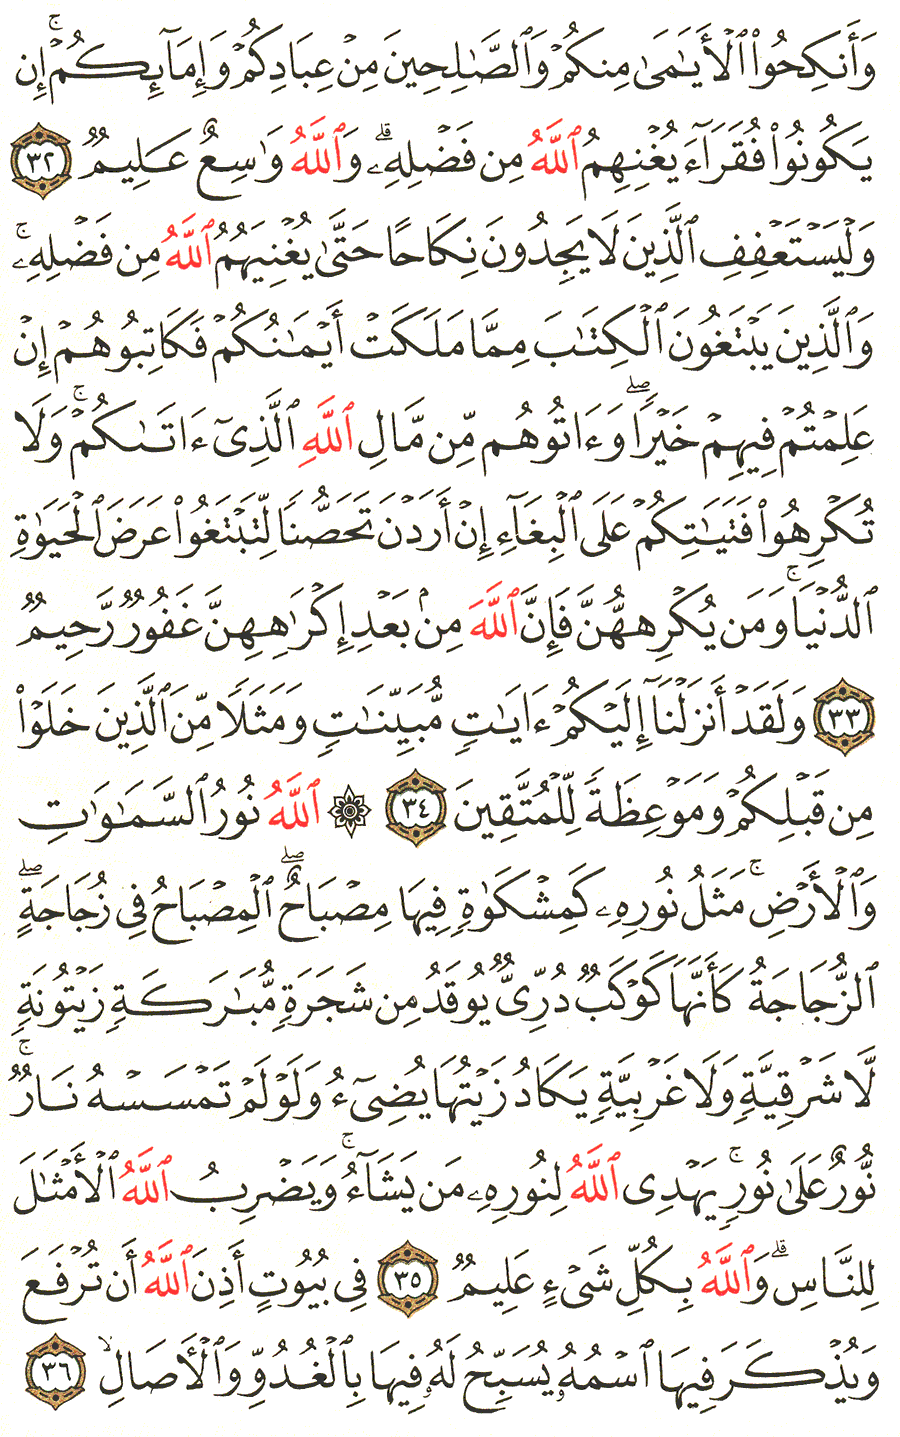 الصفحة رقم 354  من القرآن الكريم مكتوبة من المصحف